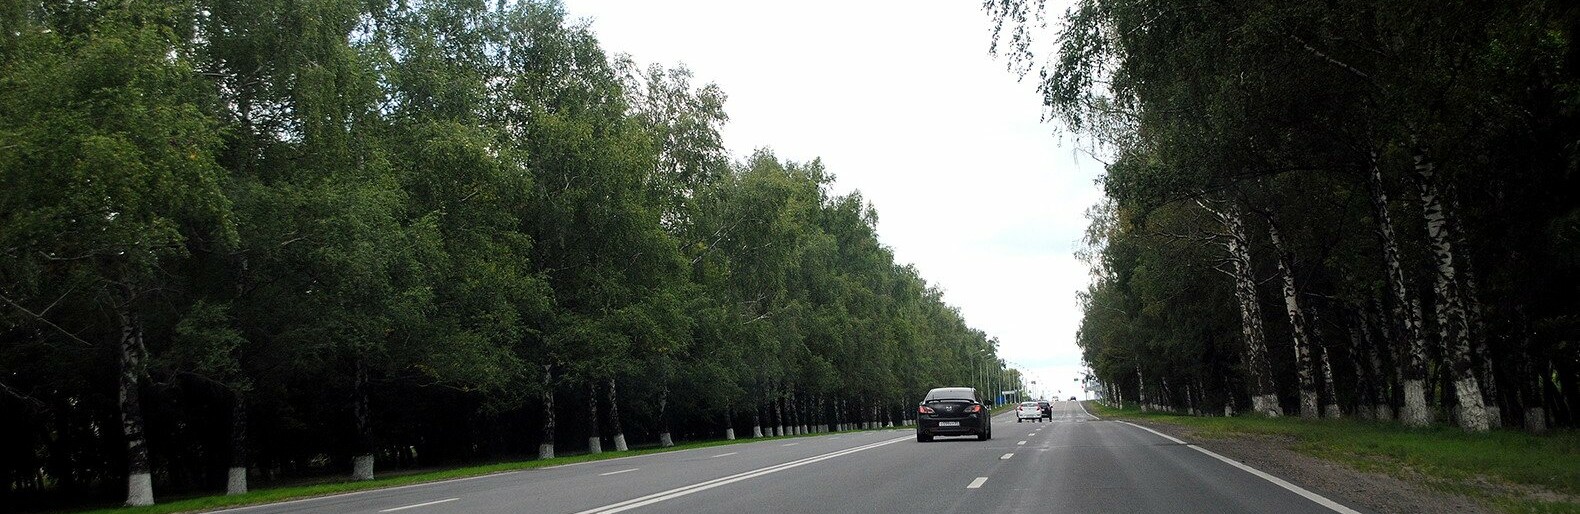 За 200 млн рублей в Белгородской области оборудуют 41 километр сетей наружного освещения